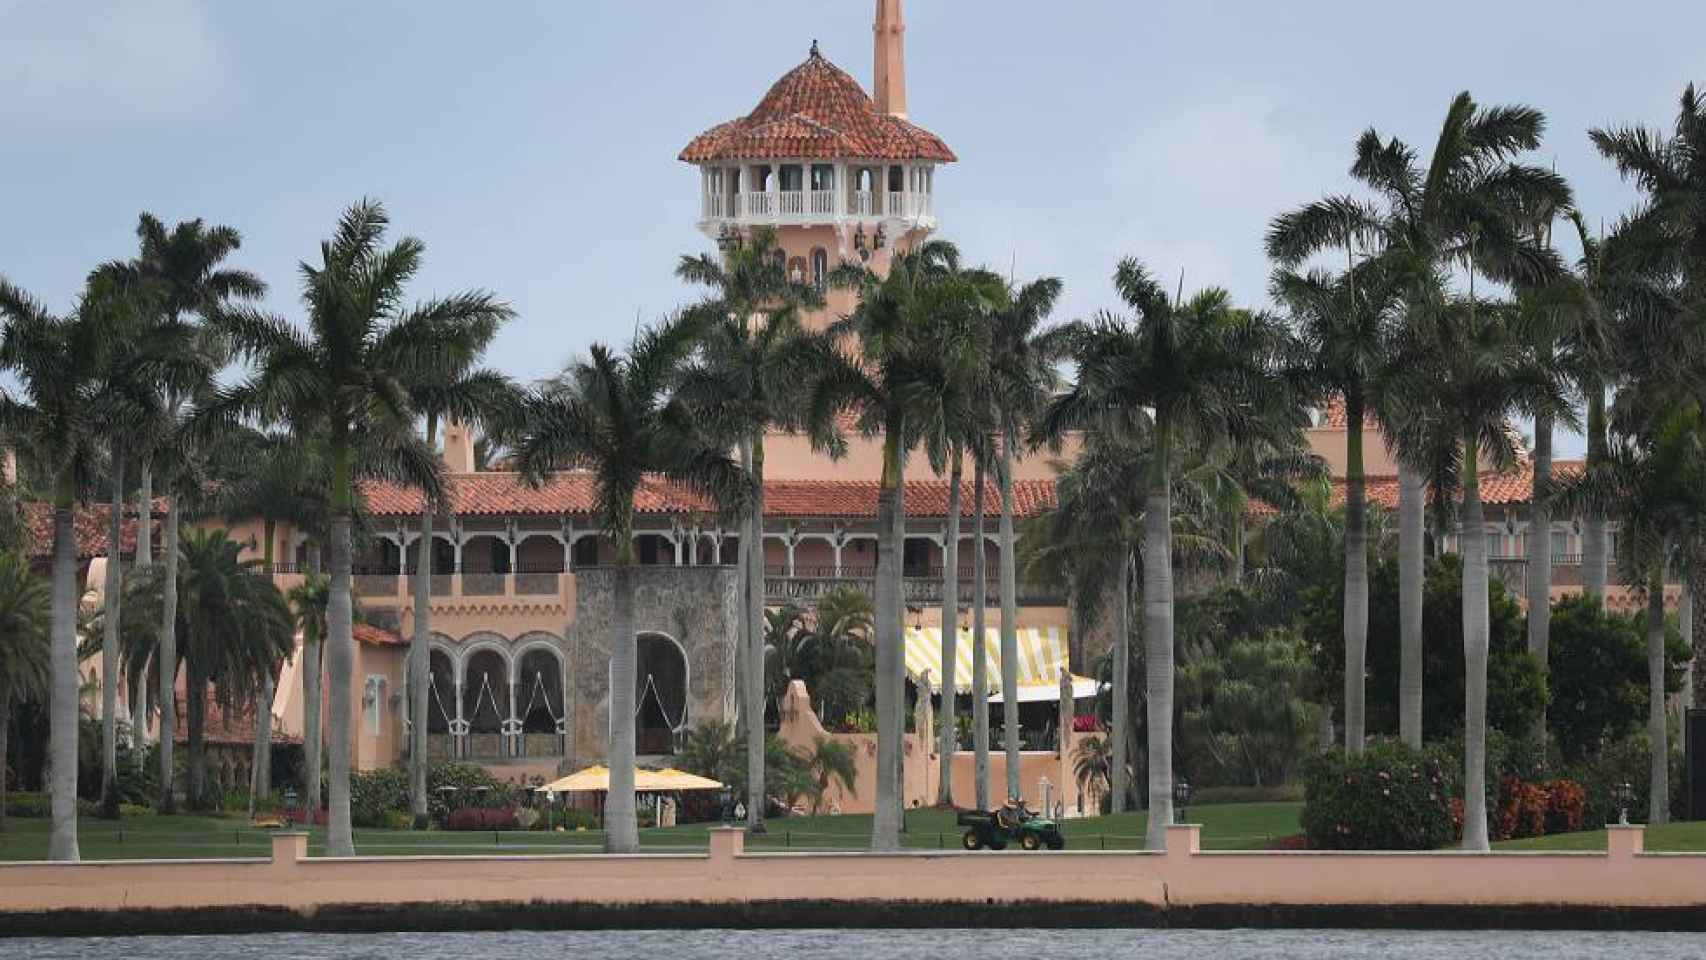 Imagen de la fachada de la casa del expresidente Trump en Palm Beach.